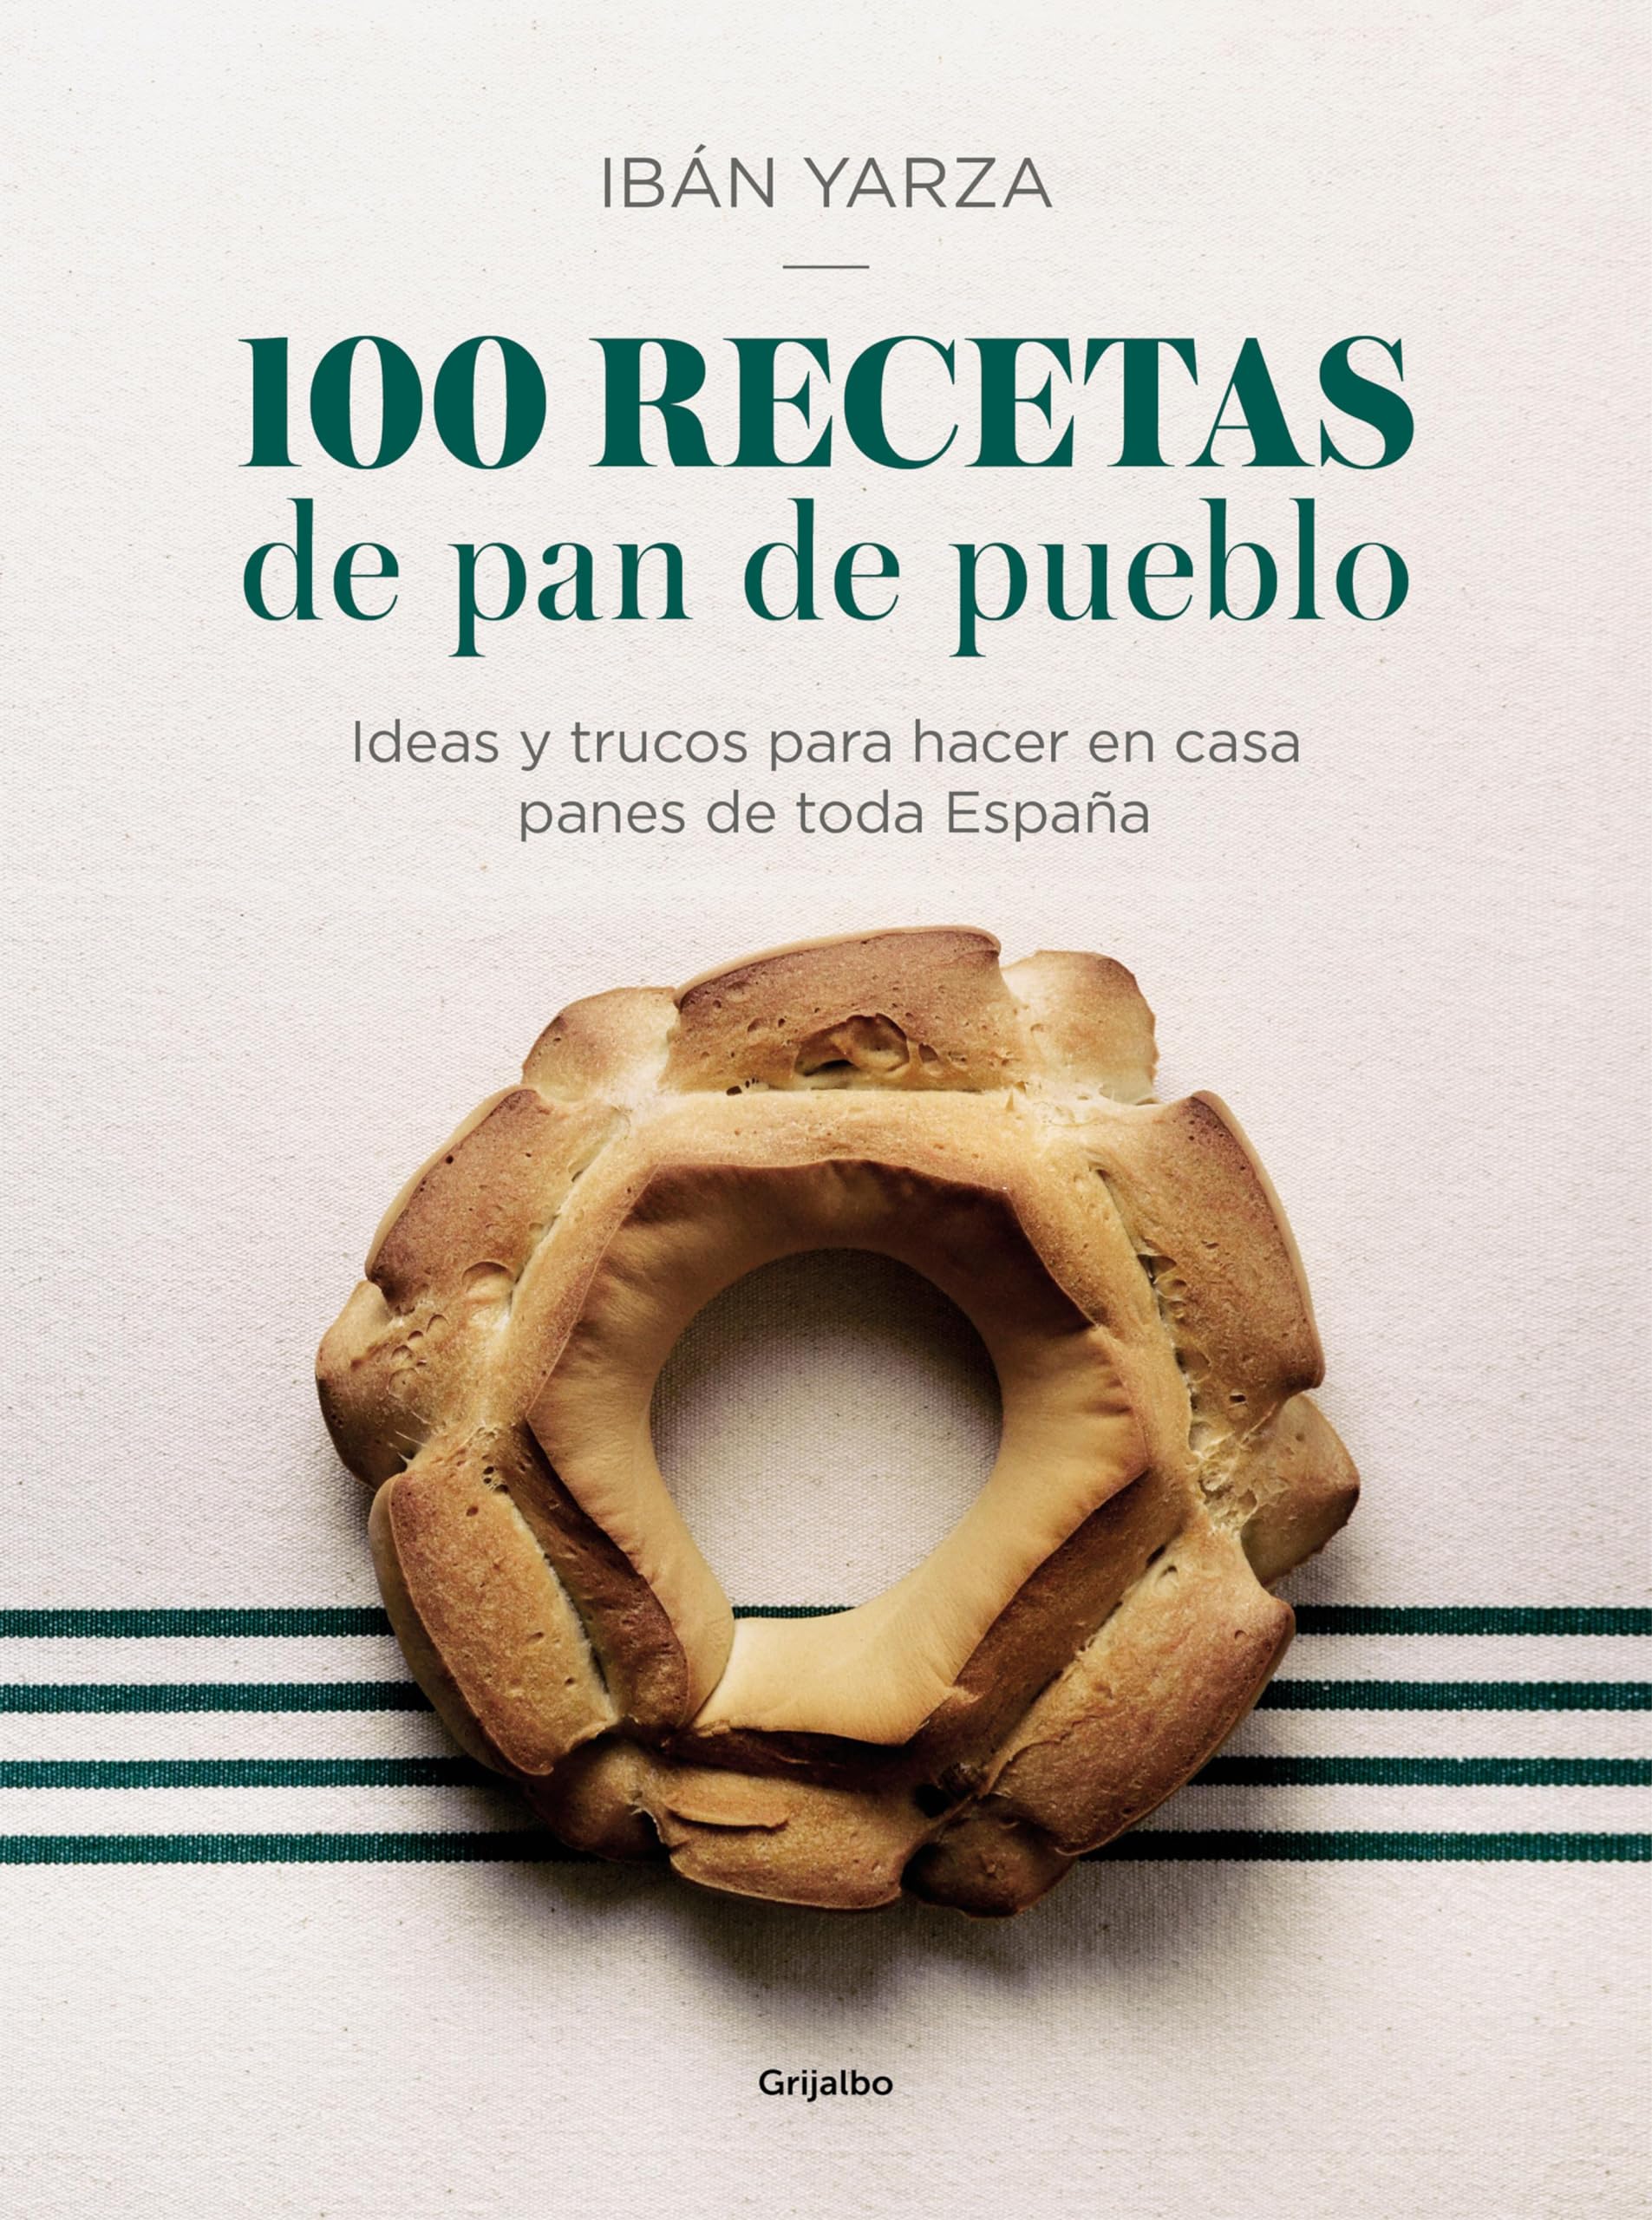 100 recetas de pan de pueblo: Ideas y trucos para hacer en casa panes de toda España (Spanish Edition)